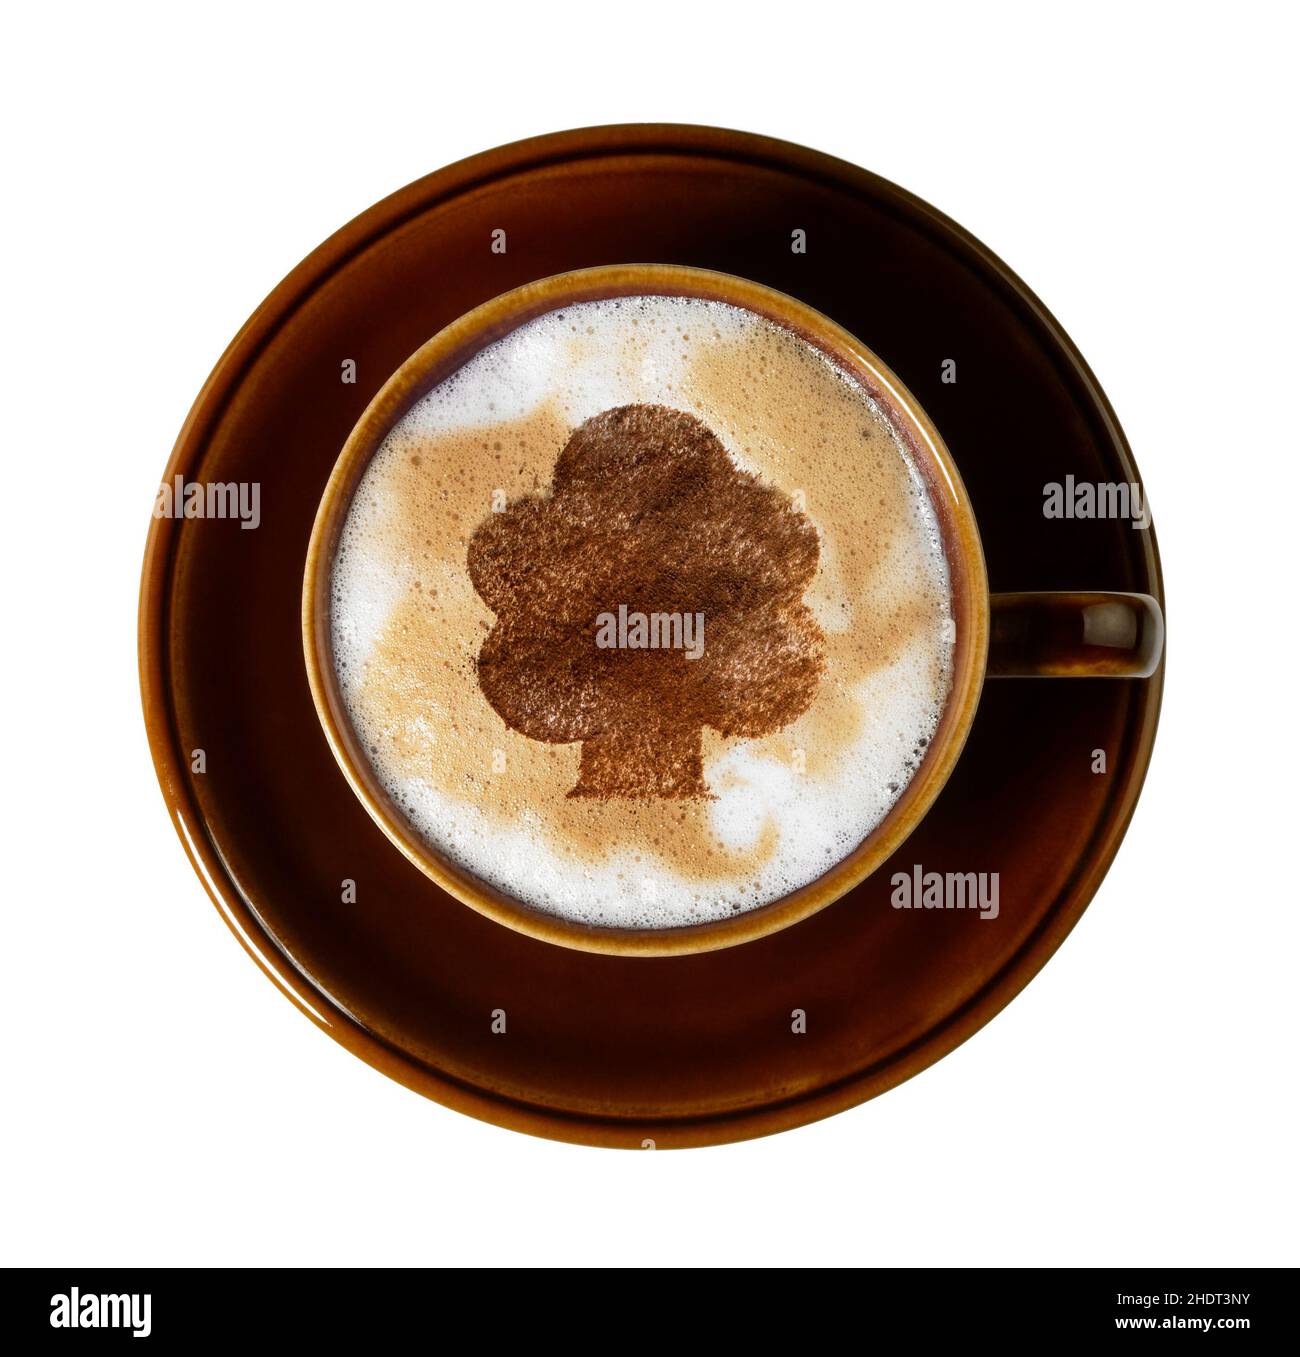 caffè, schiuma di latte, tazza di caffè, cappuccino, latte art, caffè, schiuma di latte, tazze di caffè, cappuccini, cappuccino Foto Stock